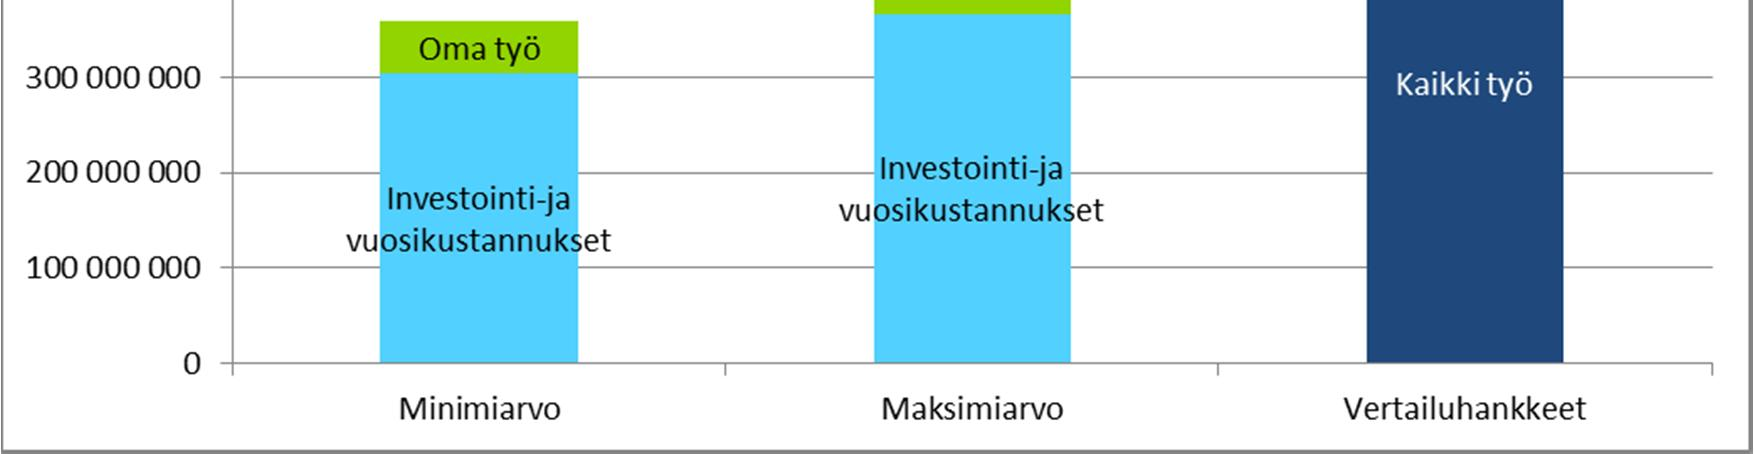 Kokonaiskustannukset 10 vuoden aikana Pylväät kuvaavat kokonaiskustannusten minimiarvioita ja maksimiarviota sekä vertailuhankkeiden kautta muodostettua vertailuarvoa (tummansininen palkki)